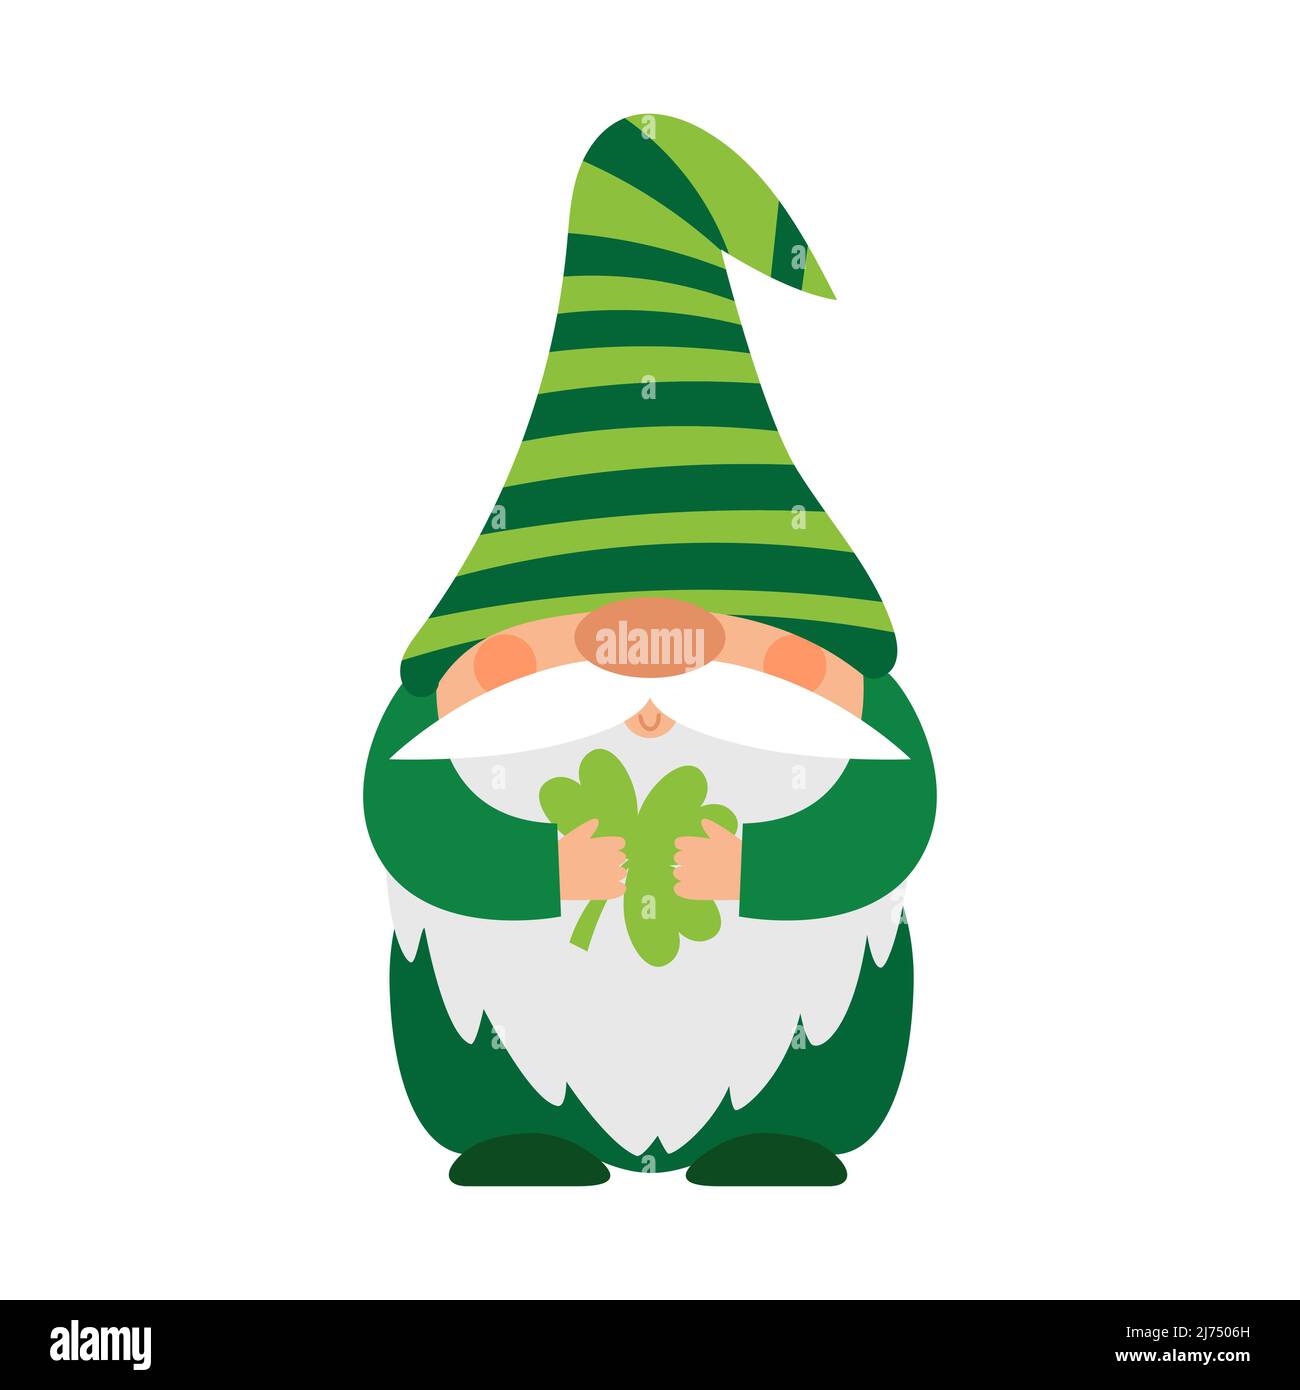 Ein kleiner plump Zwerg in einem grün gestreiften Hut hält ein Kleeblatt in seinen Händen. Ein kleiner bärtiger Gnom, eine niedliche Zeichentrickfigur in einem flachen Stil. Kolo Stock Vektor